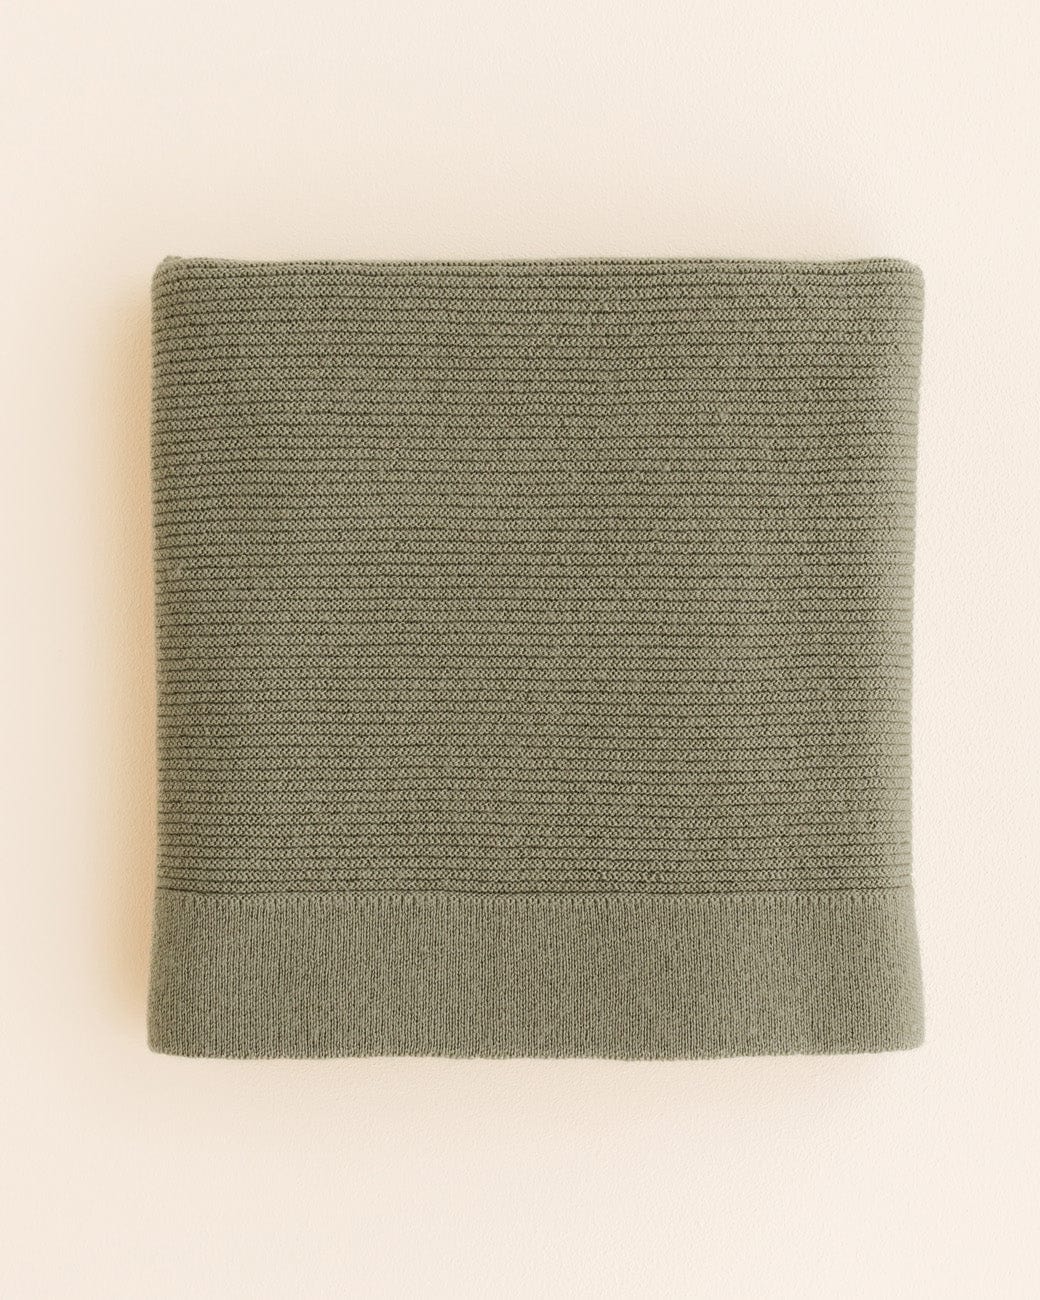 Merino wool blanket "Gust" artichoke